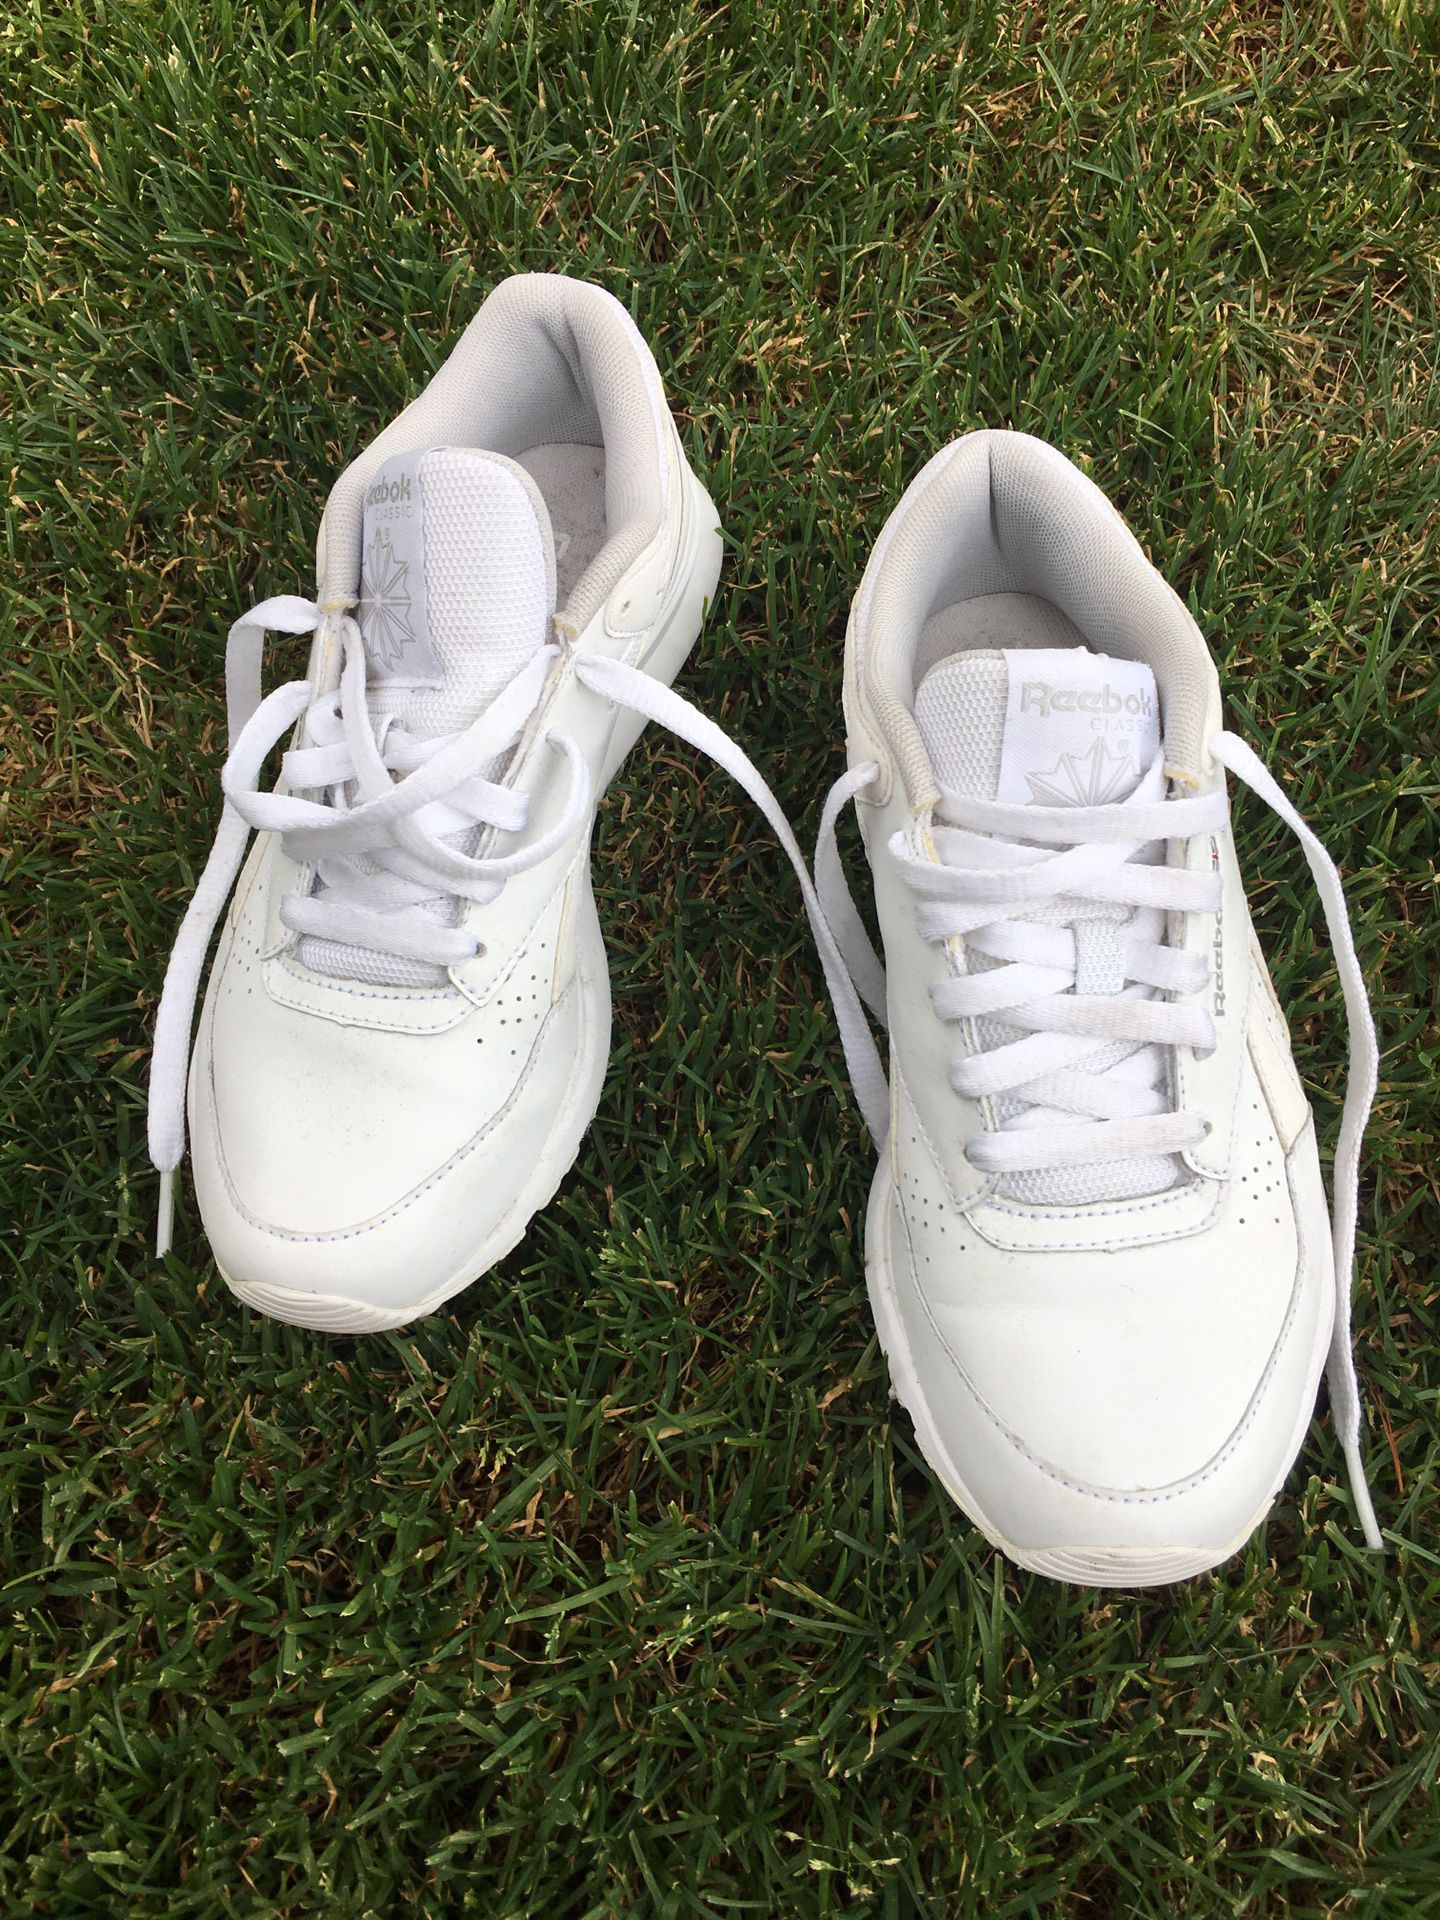 Reebok tennis shoe size 6